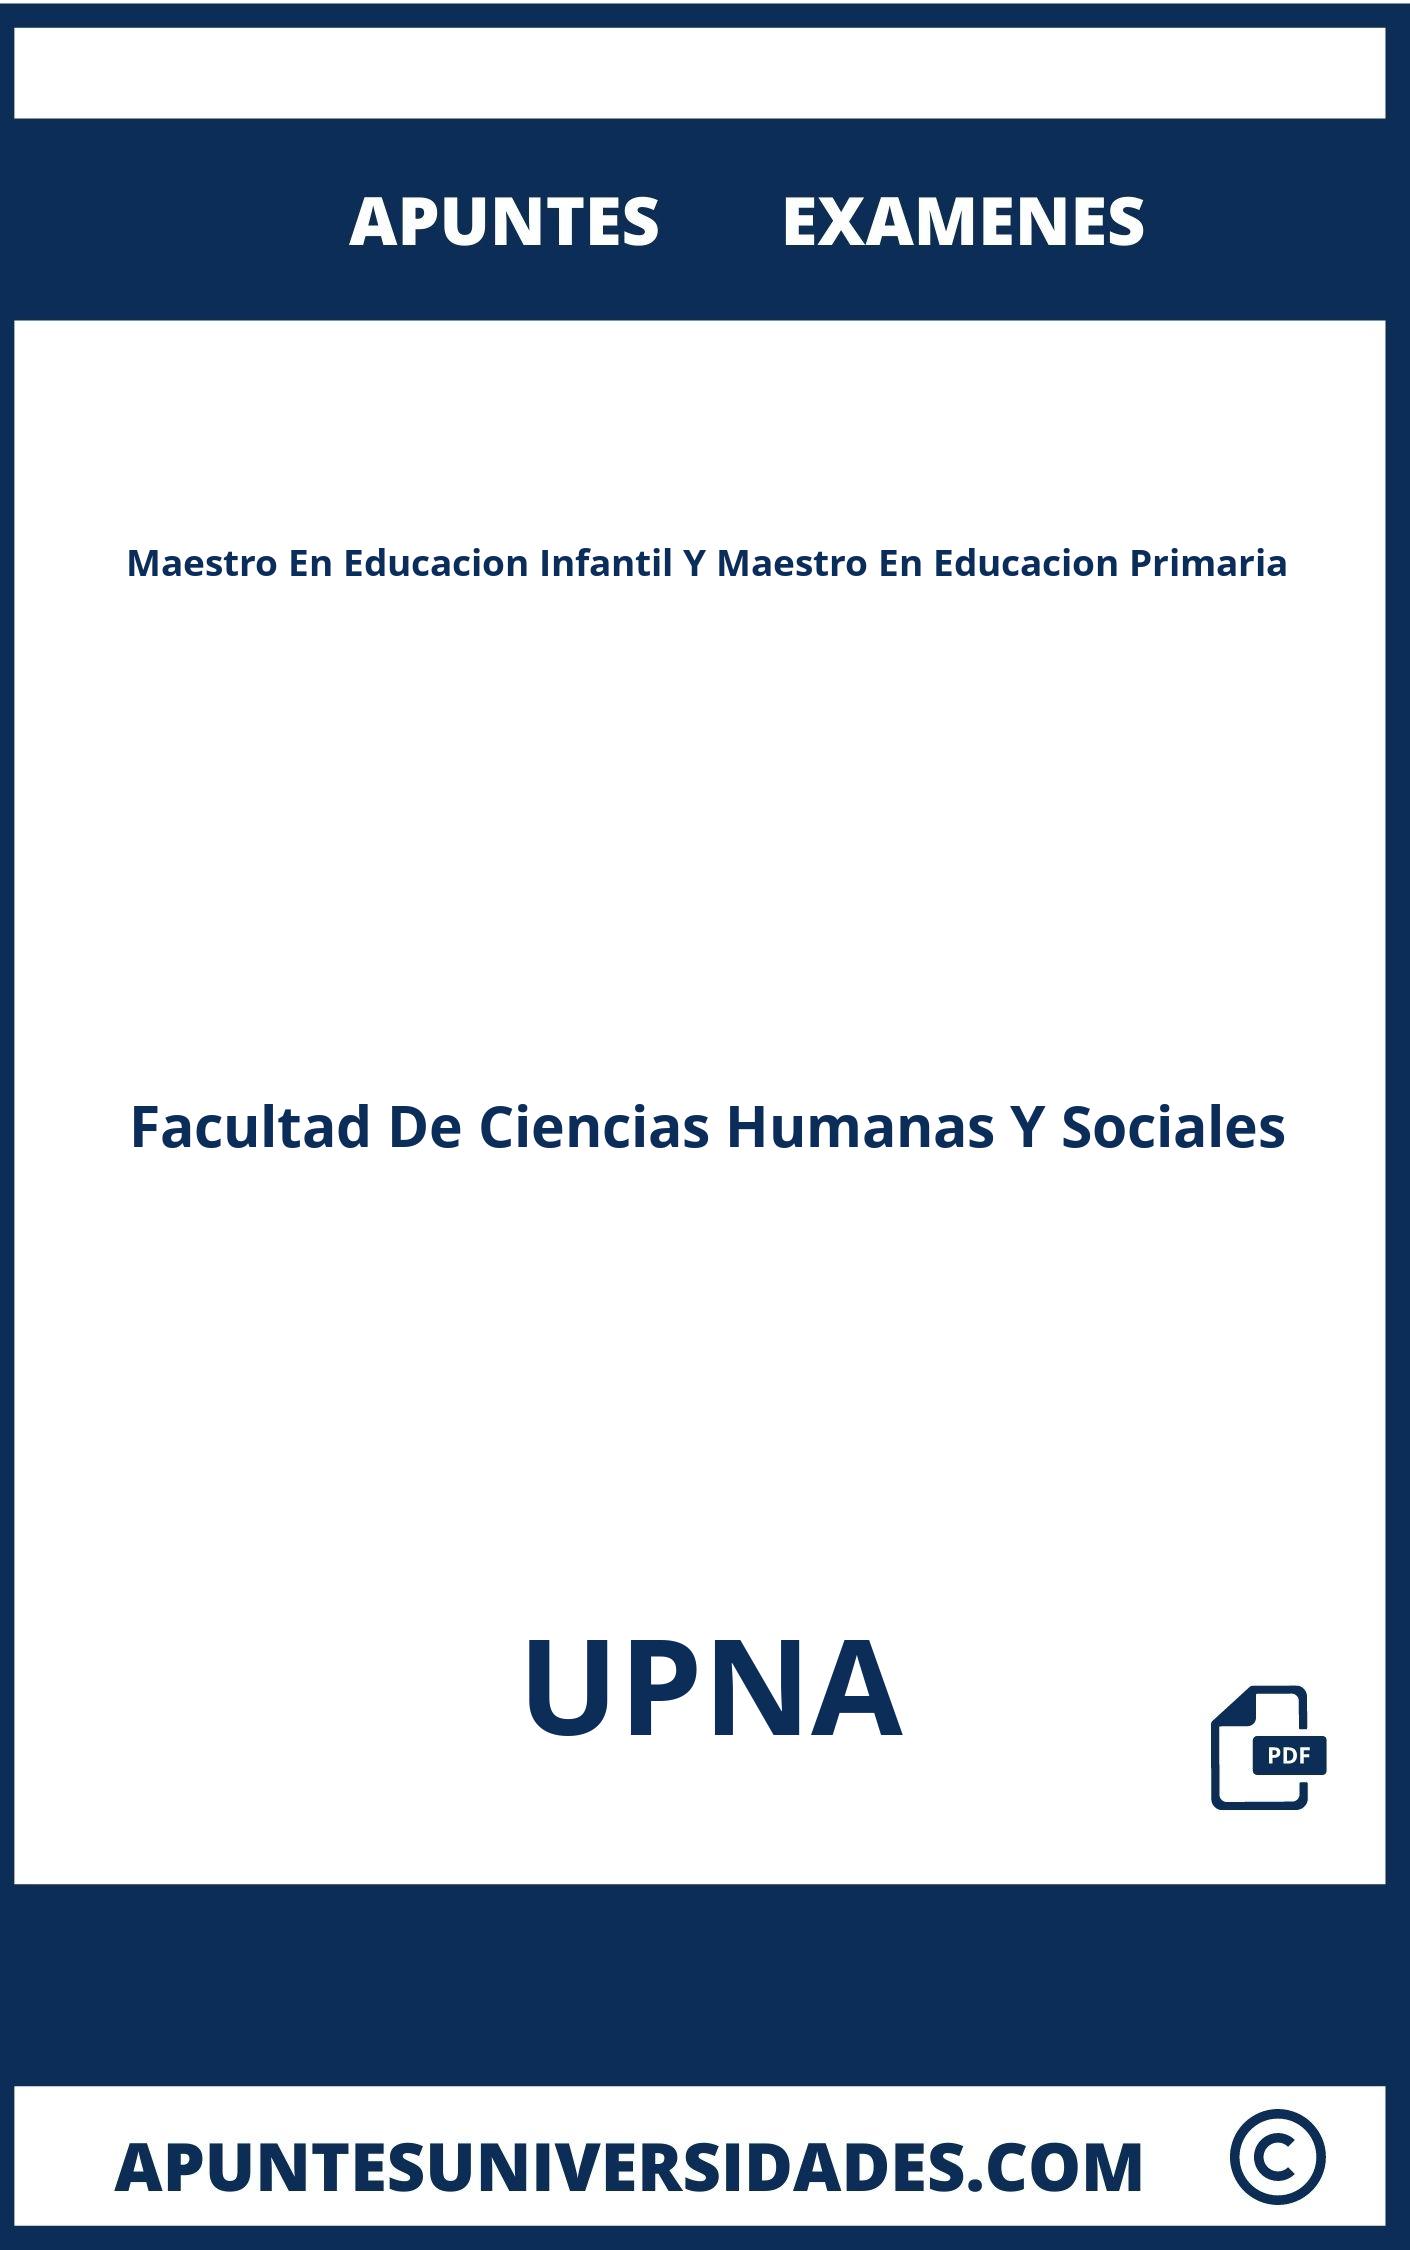 Examenes Maestro En Educacion Infantil Y Maestro En Educacion Primaria UPNA y Apuntes